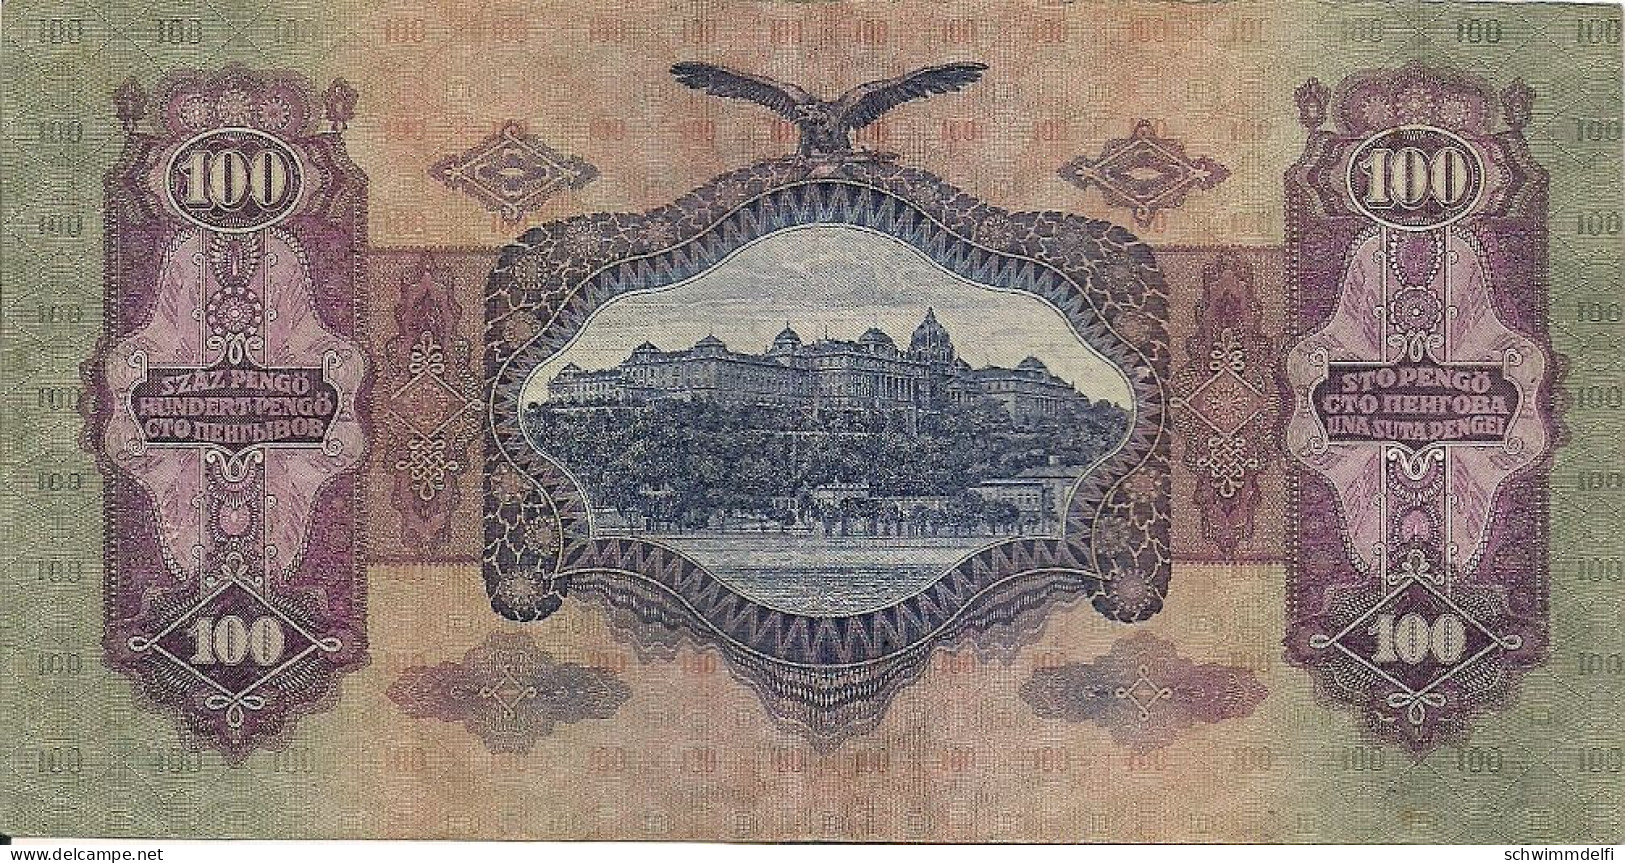 HUNGRÍA - UNGARN - HUNGARY - 100 PENGÖ 1930 - EBC - SEHR SCHON - VERY FINE - Hungría